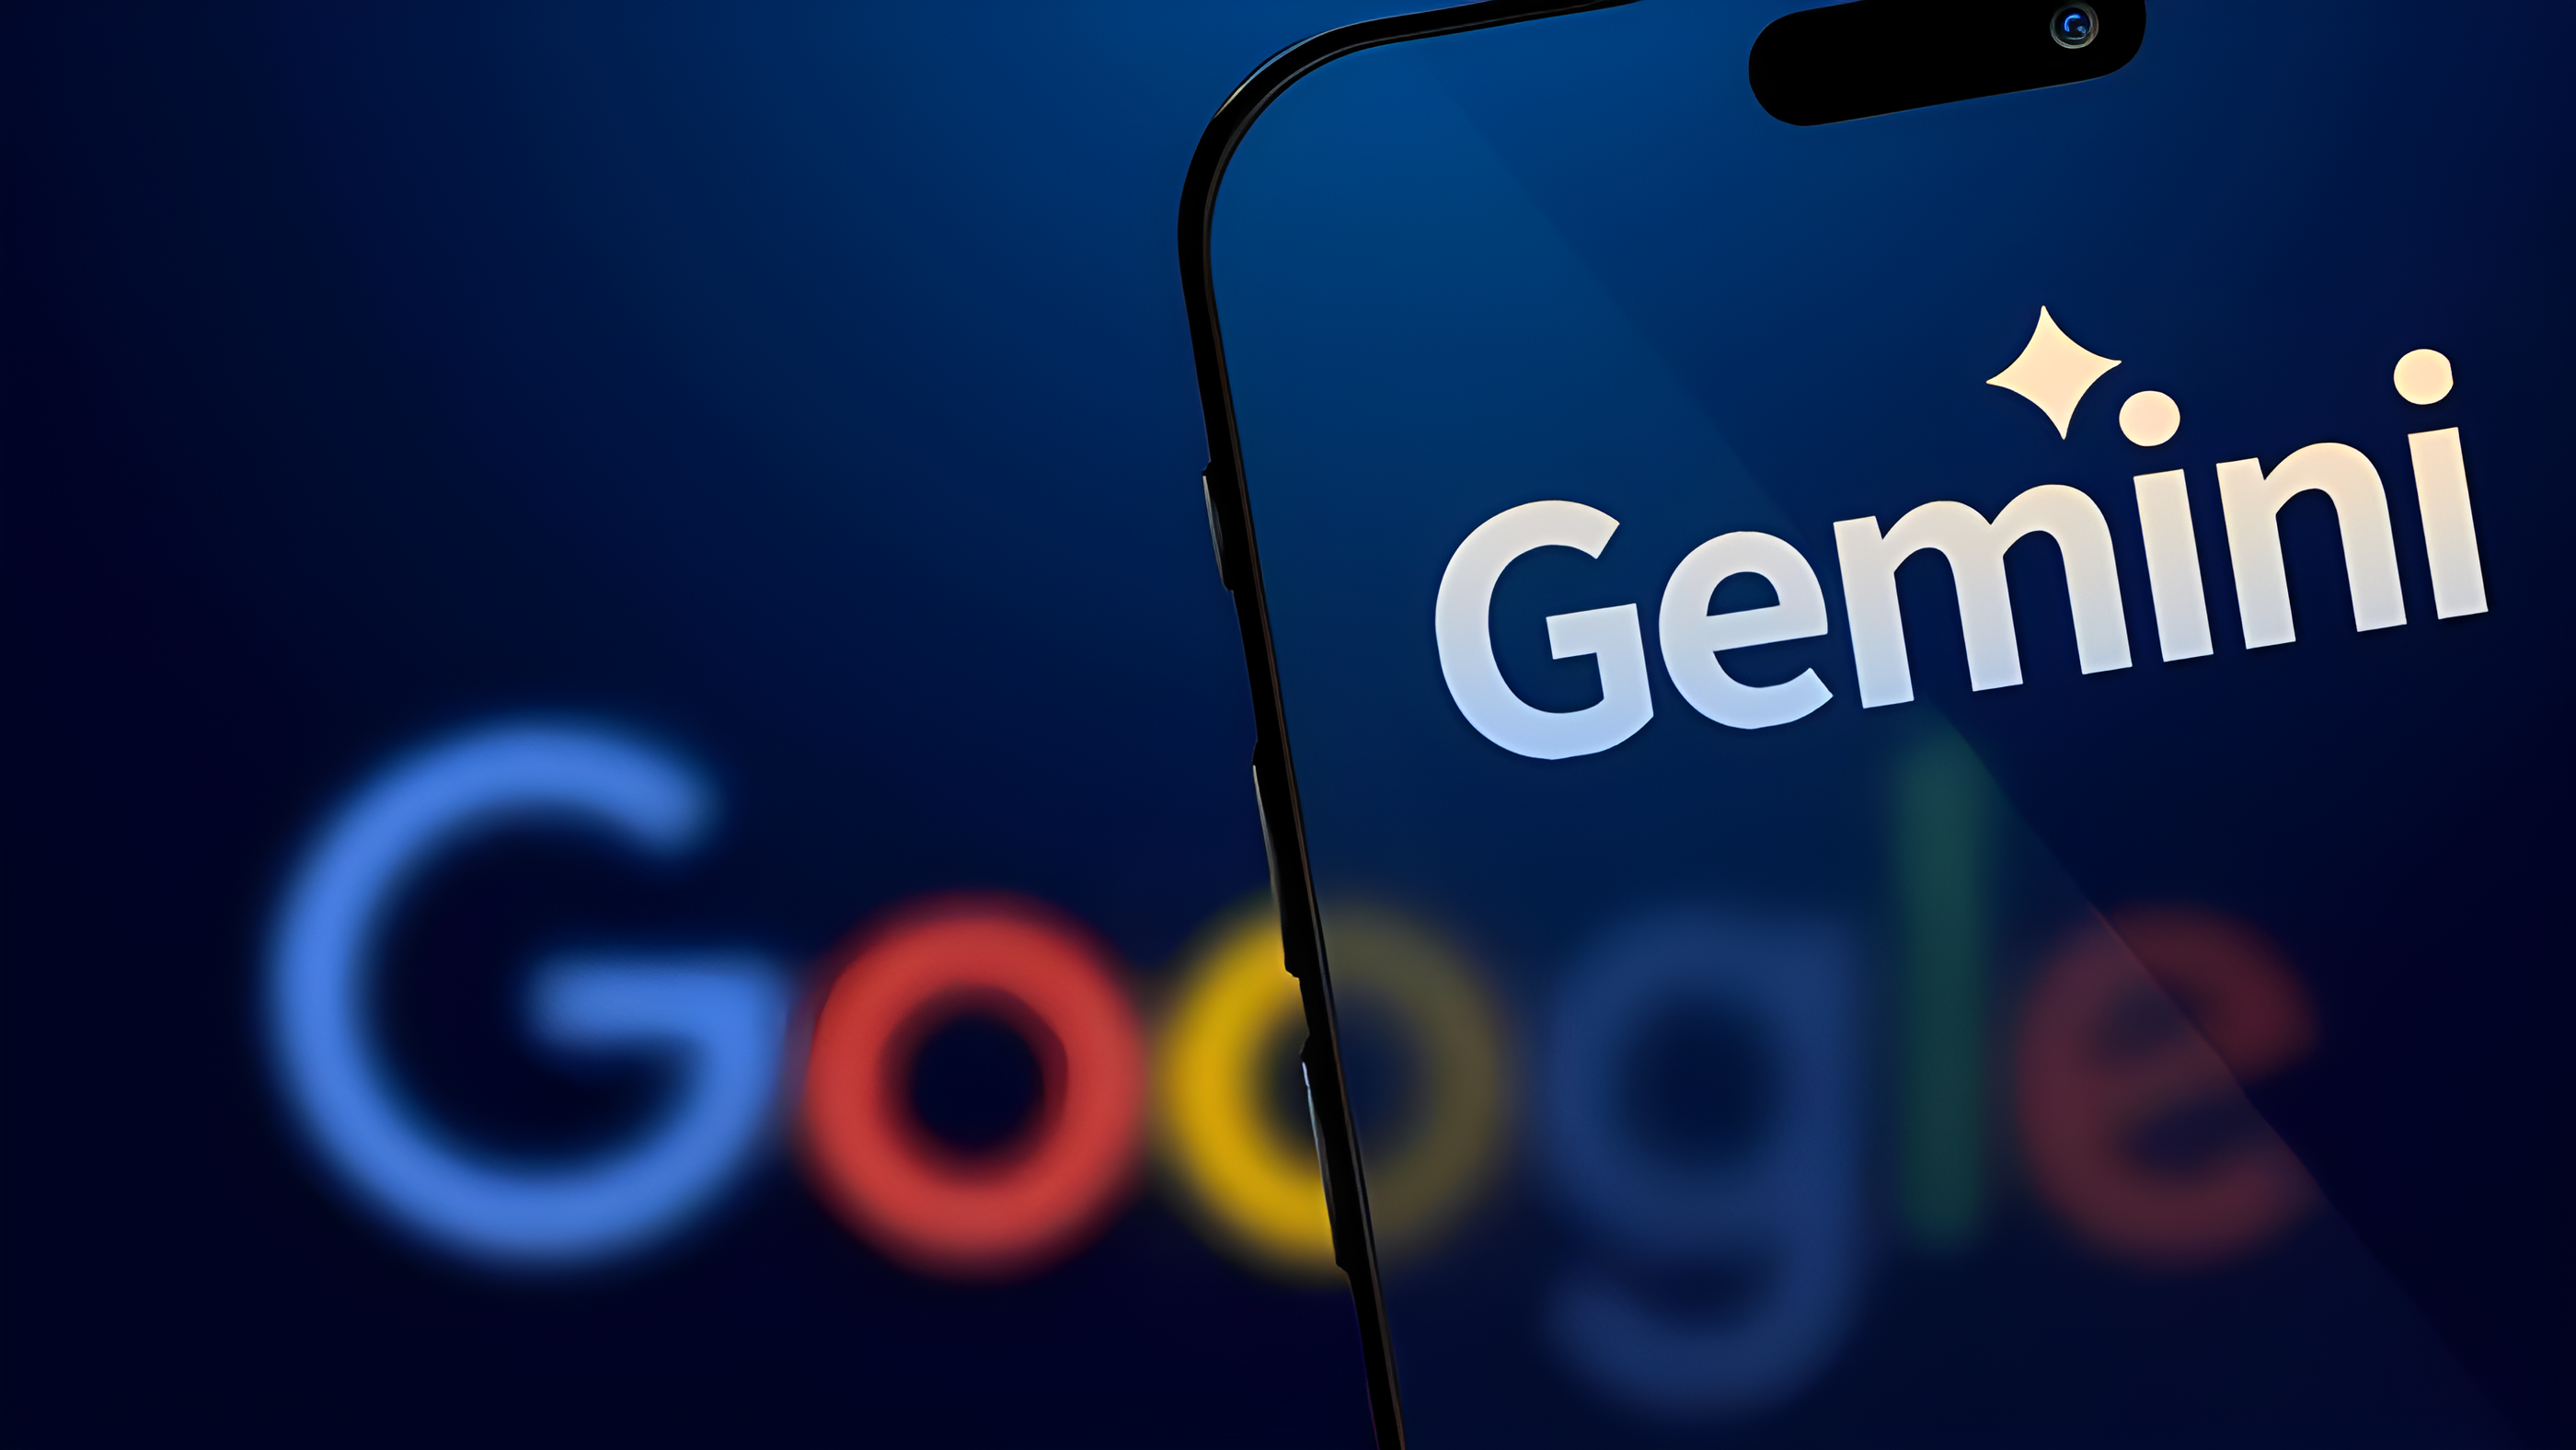 谷歌Google推出全新人工智能AI模型Gemini：功能强大，使用便捷